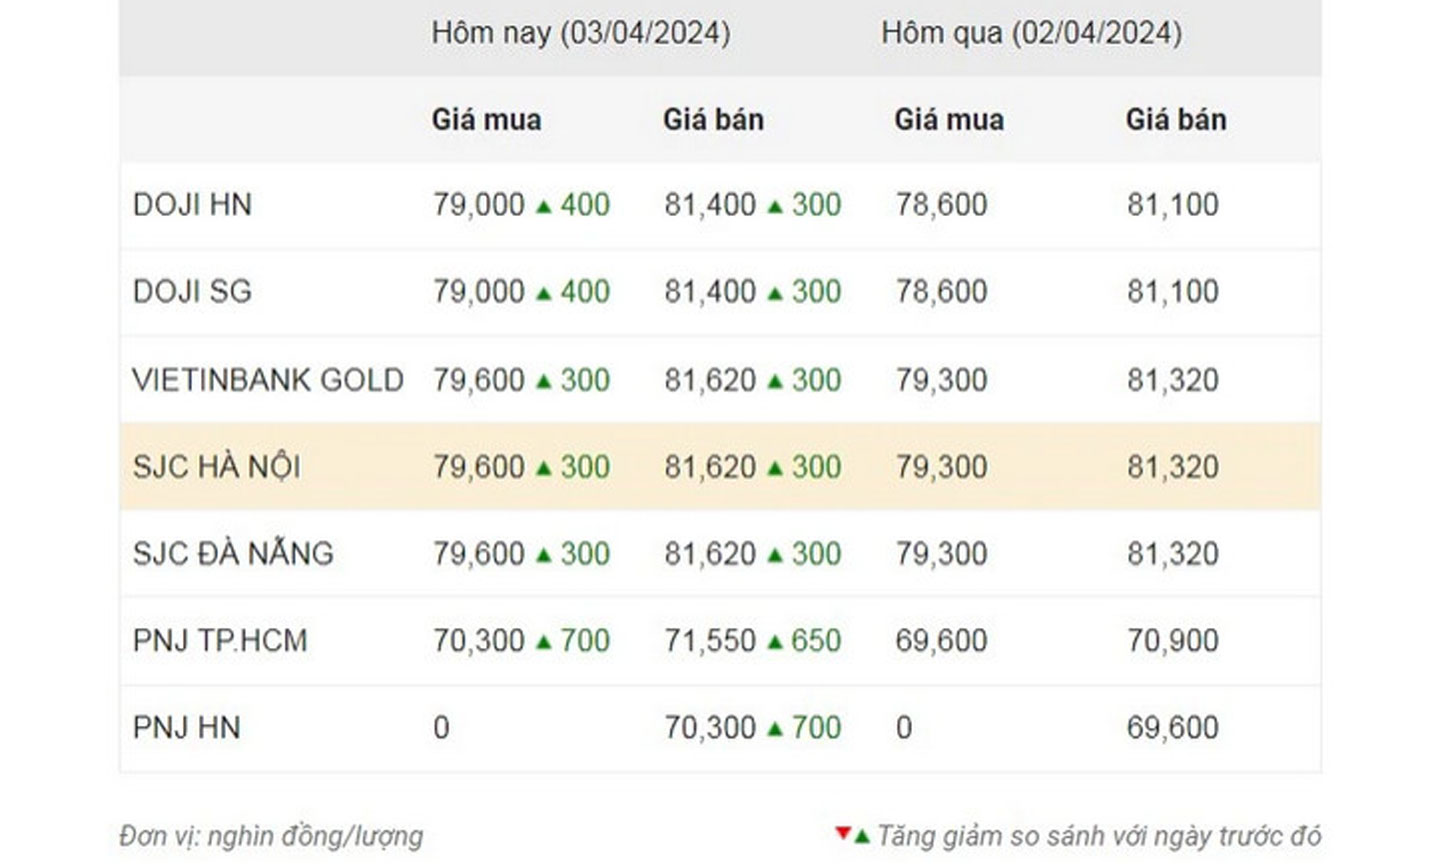 Thống kê giá vàng của Công ty cổ phần Dịch vụ trực tuyến Rồng Việt VDOS - Cập nhật lúc 10 giờ 30 phút ngày 3/4.